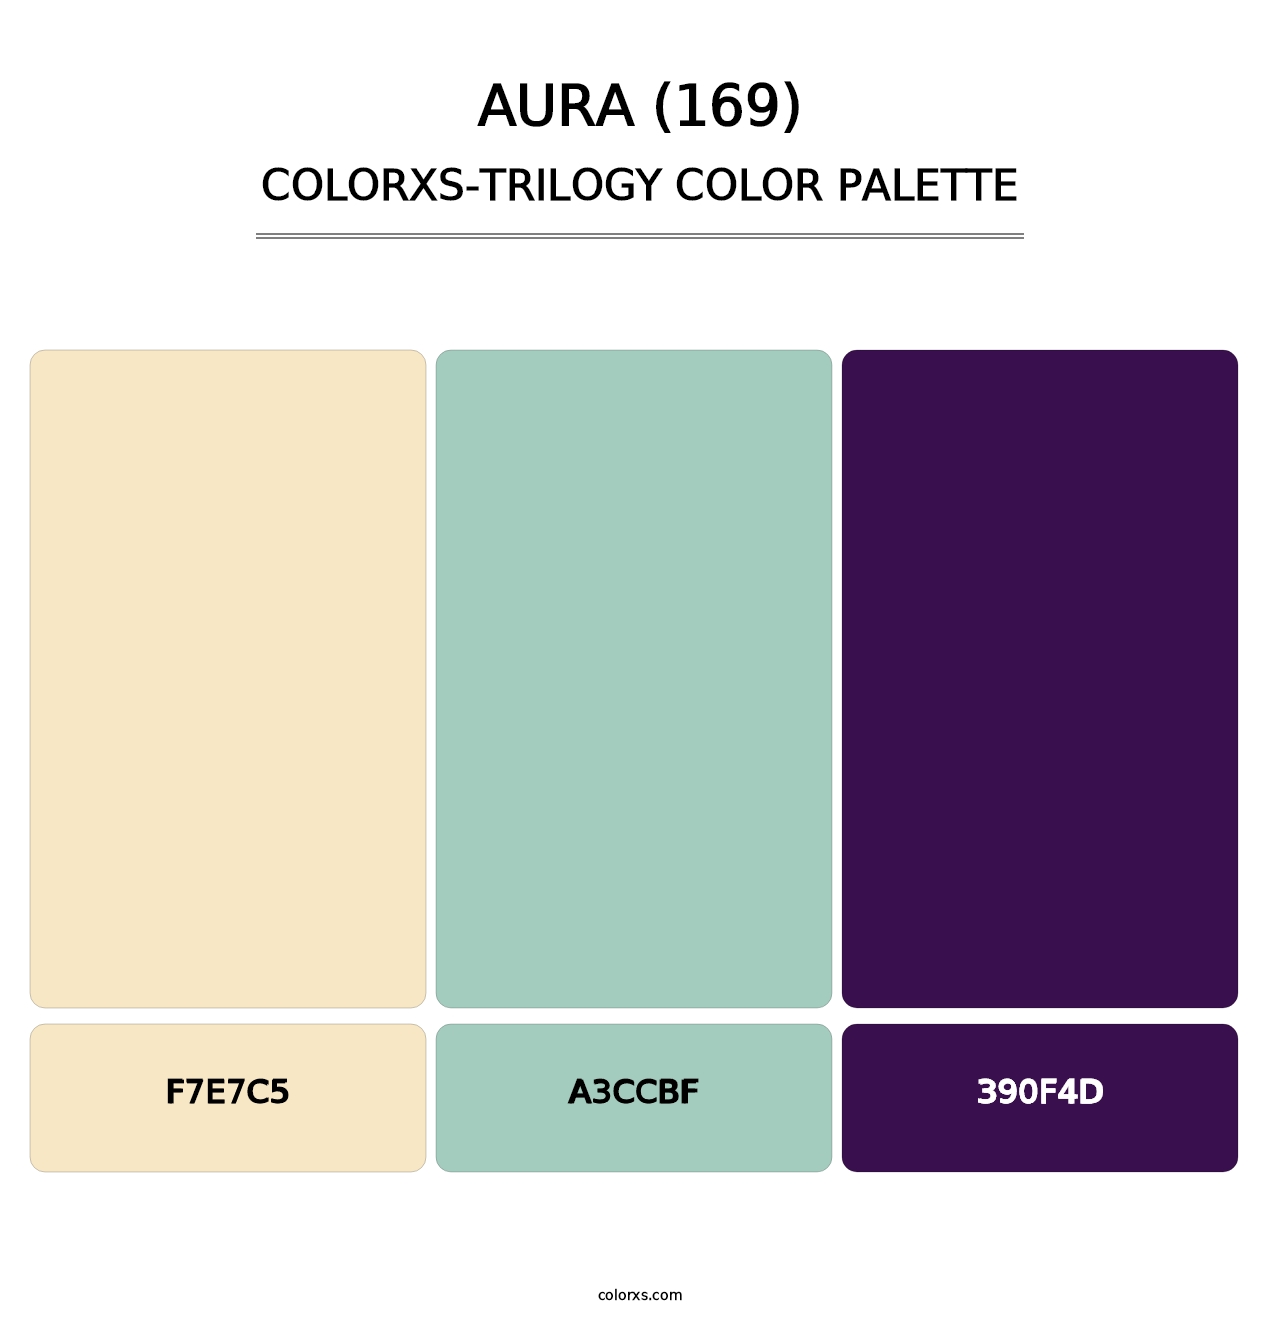 Aura (169) - Colorxs Trilogy Palette